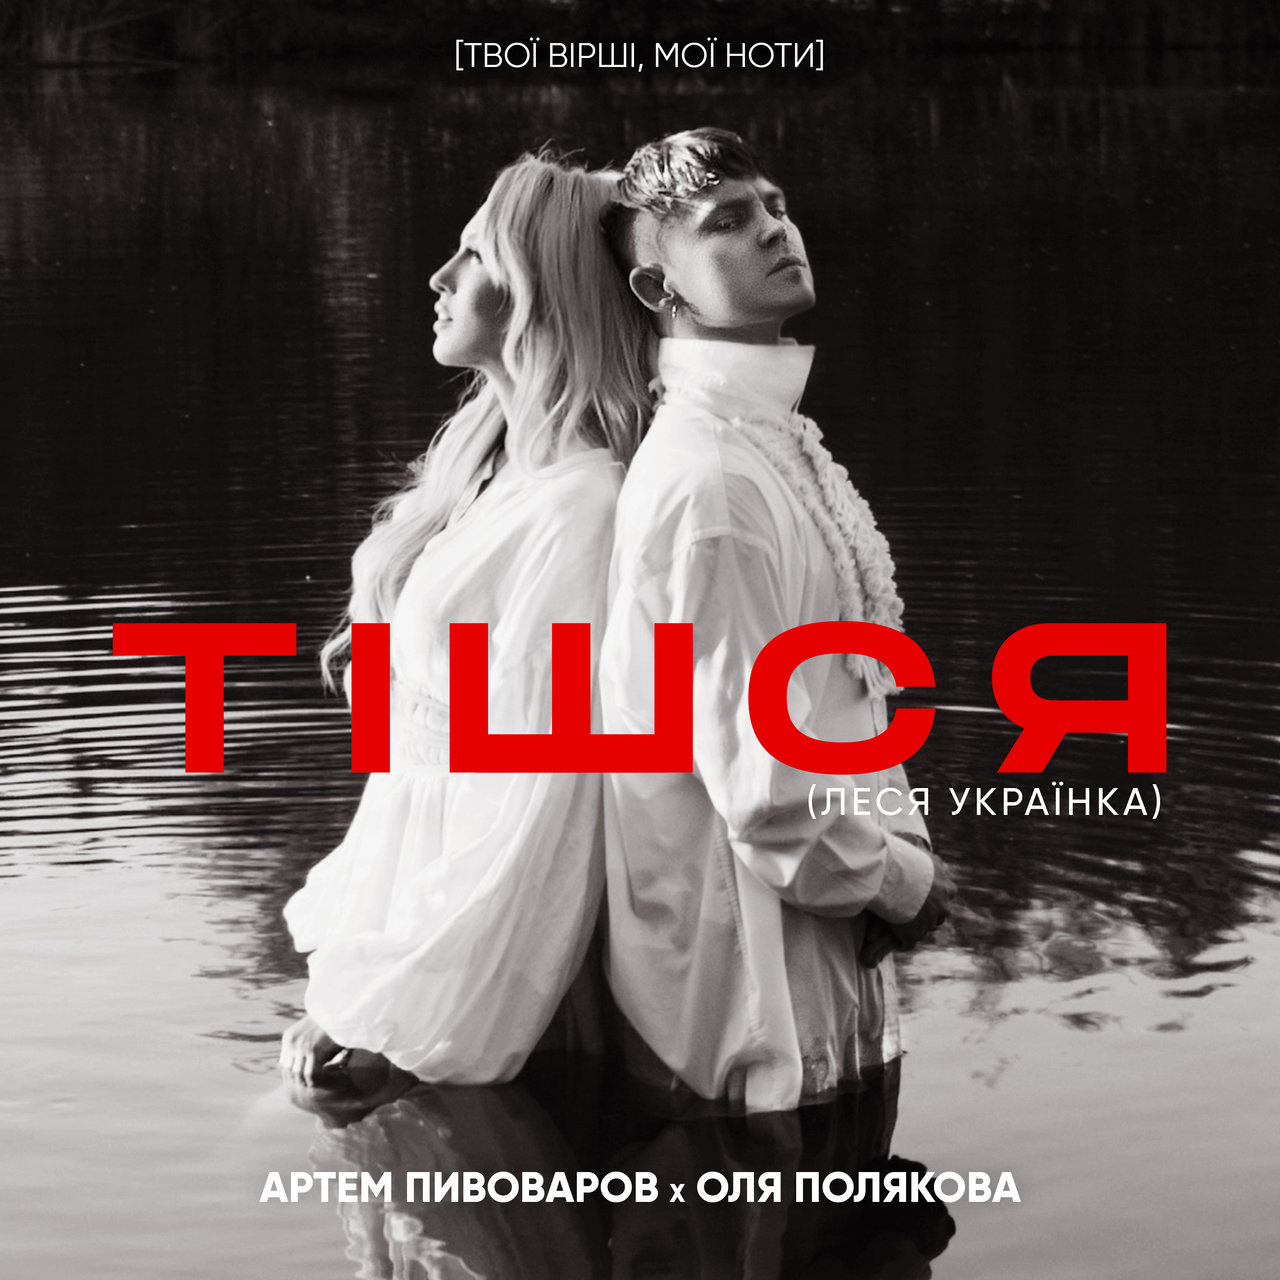 Artem Pivovarov & Olya Polyakova — Тішся cover artwork